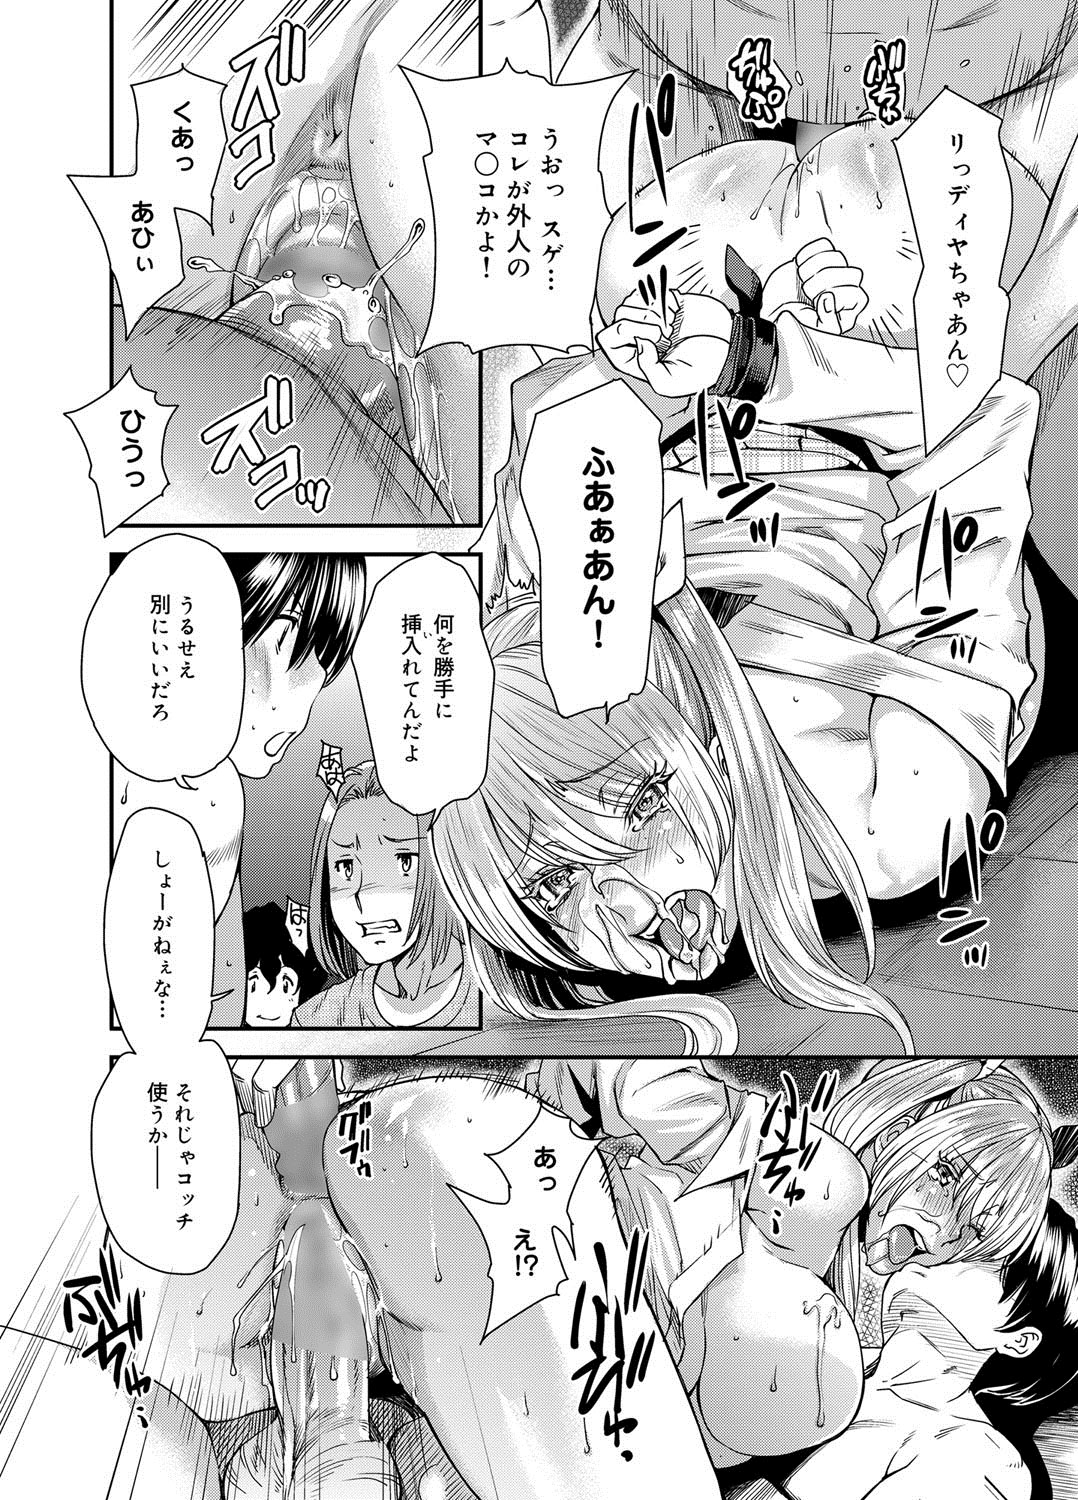 [Ryo Oshima] Mephisto Pheles Ch.01-02 page 20 full